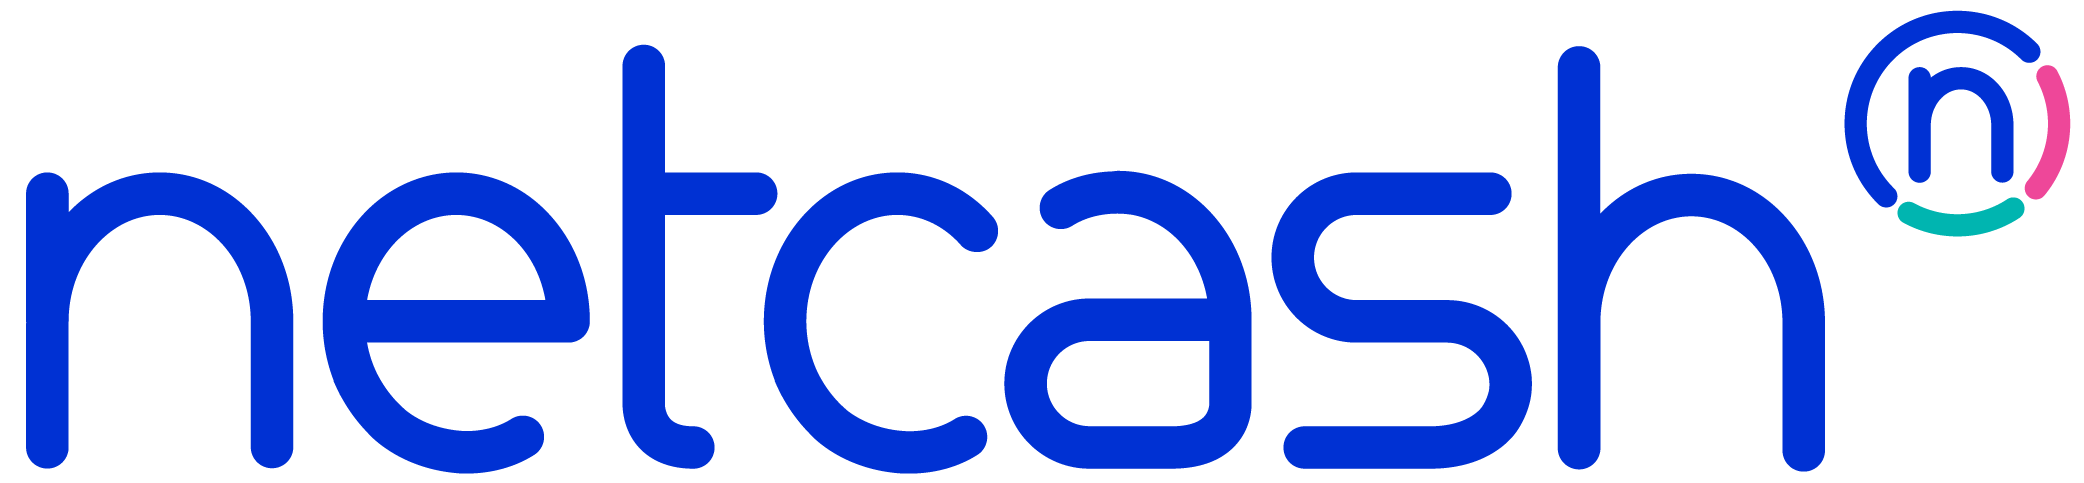 netcash logo full blue